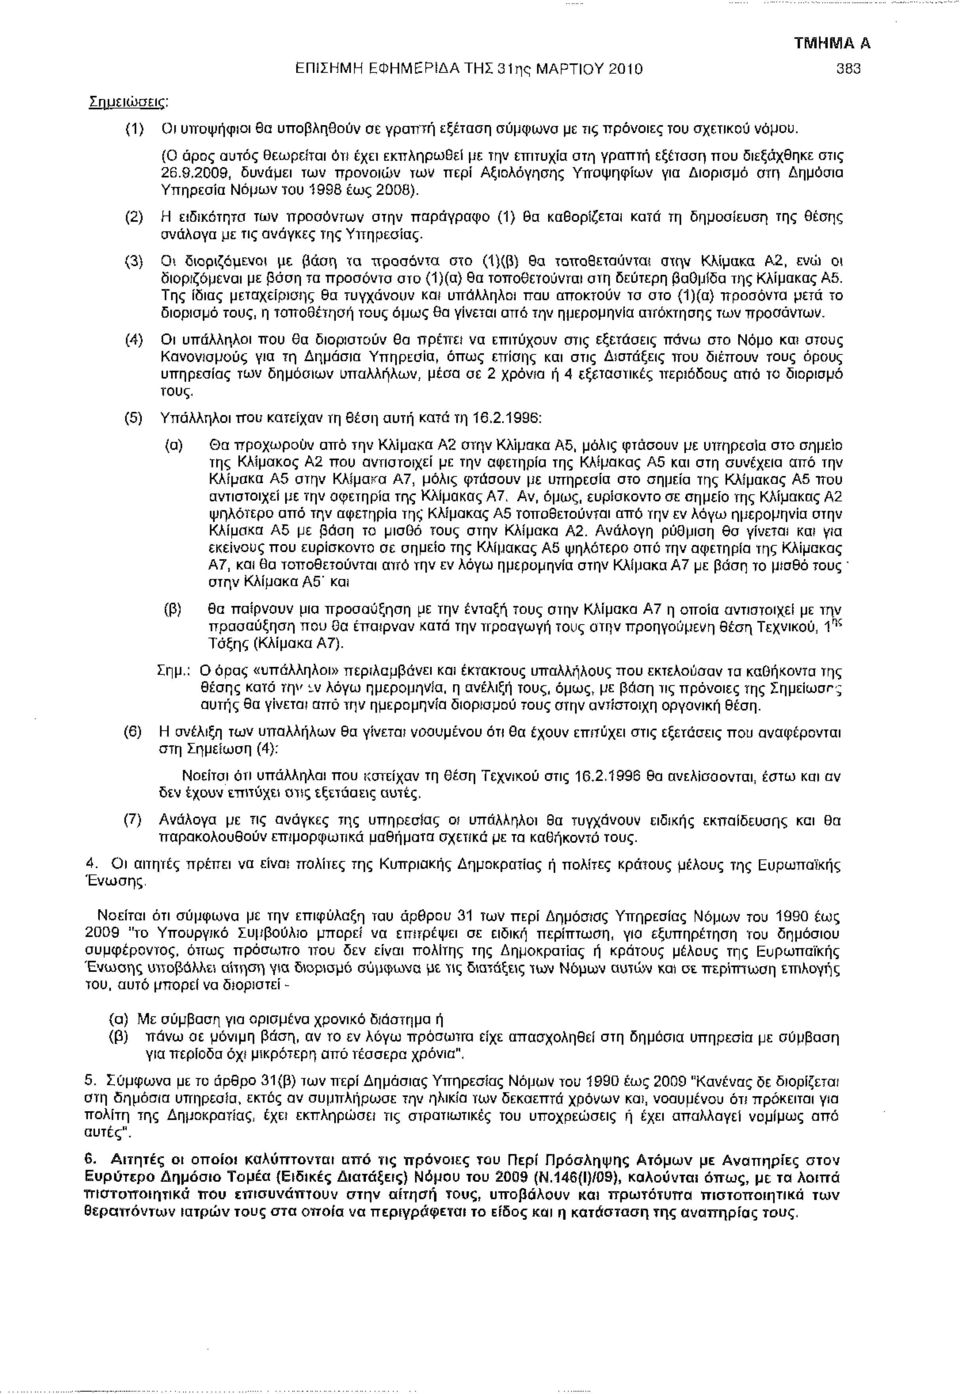 2009, δυνάμει των προνοιών των περί Αξιολόγησης Υποψηφίων για Διορισμό στη Δημόσια Υπηρεσία Νόμων του 1998 έως 2008).